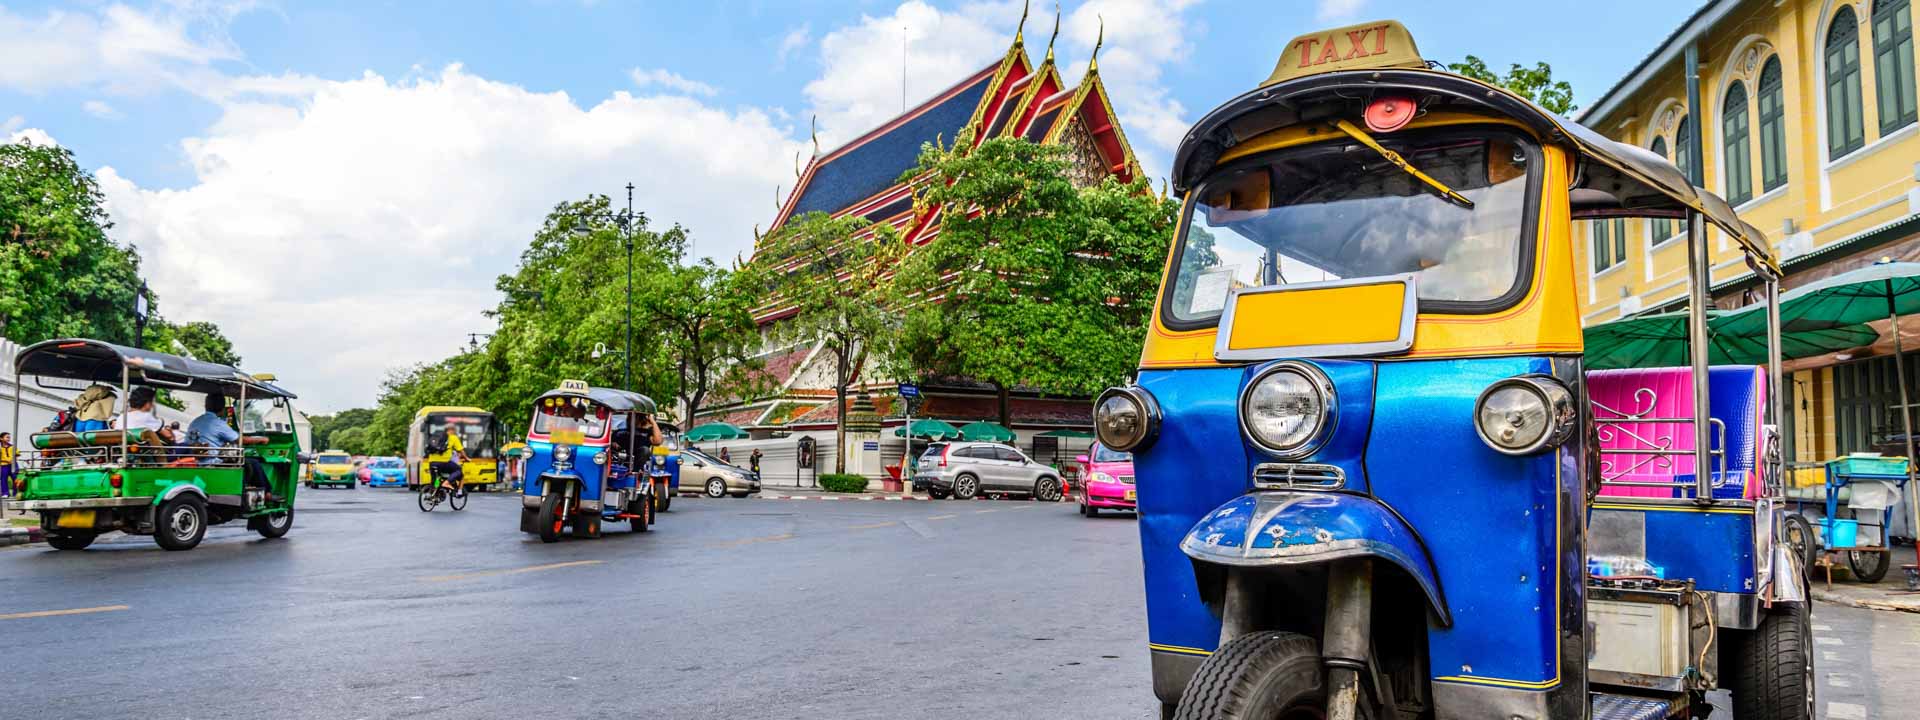 Descubrimiento de Bangkok 4 días